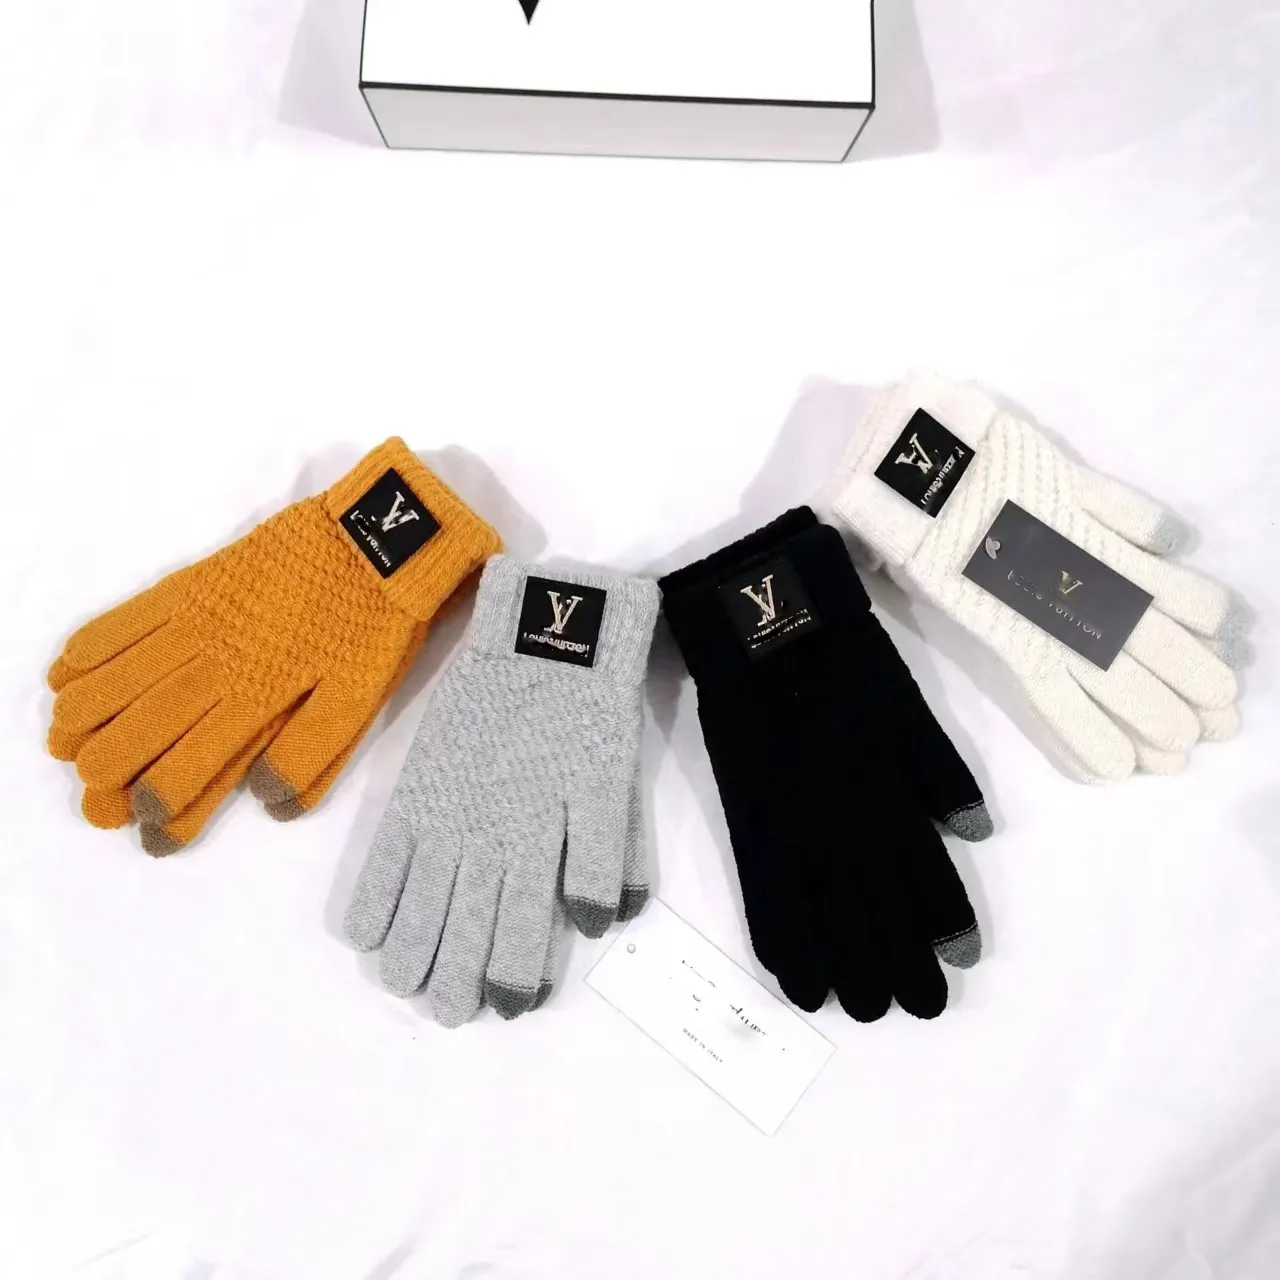 نساء الرجال خمسة أصابع قفازات مصممة أزياء للطباعة الحرف سماكة حافظ على القفازات الدافئة الشتاء في الهواء الطلق الرياضة النقية من القطن عالي الجودة 4colors